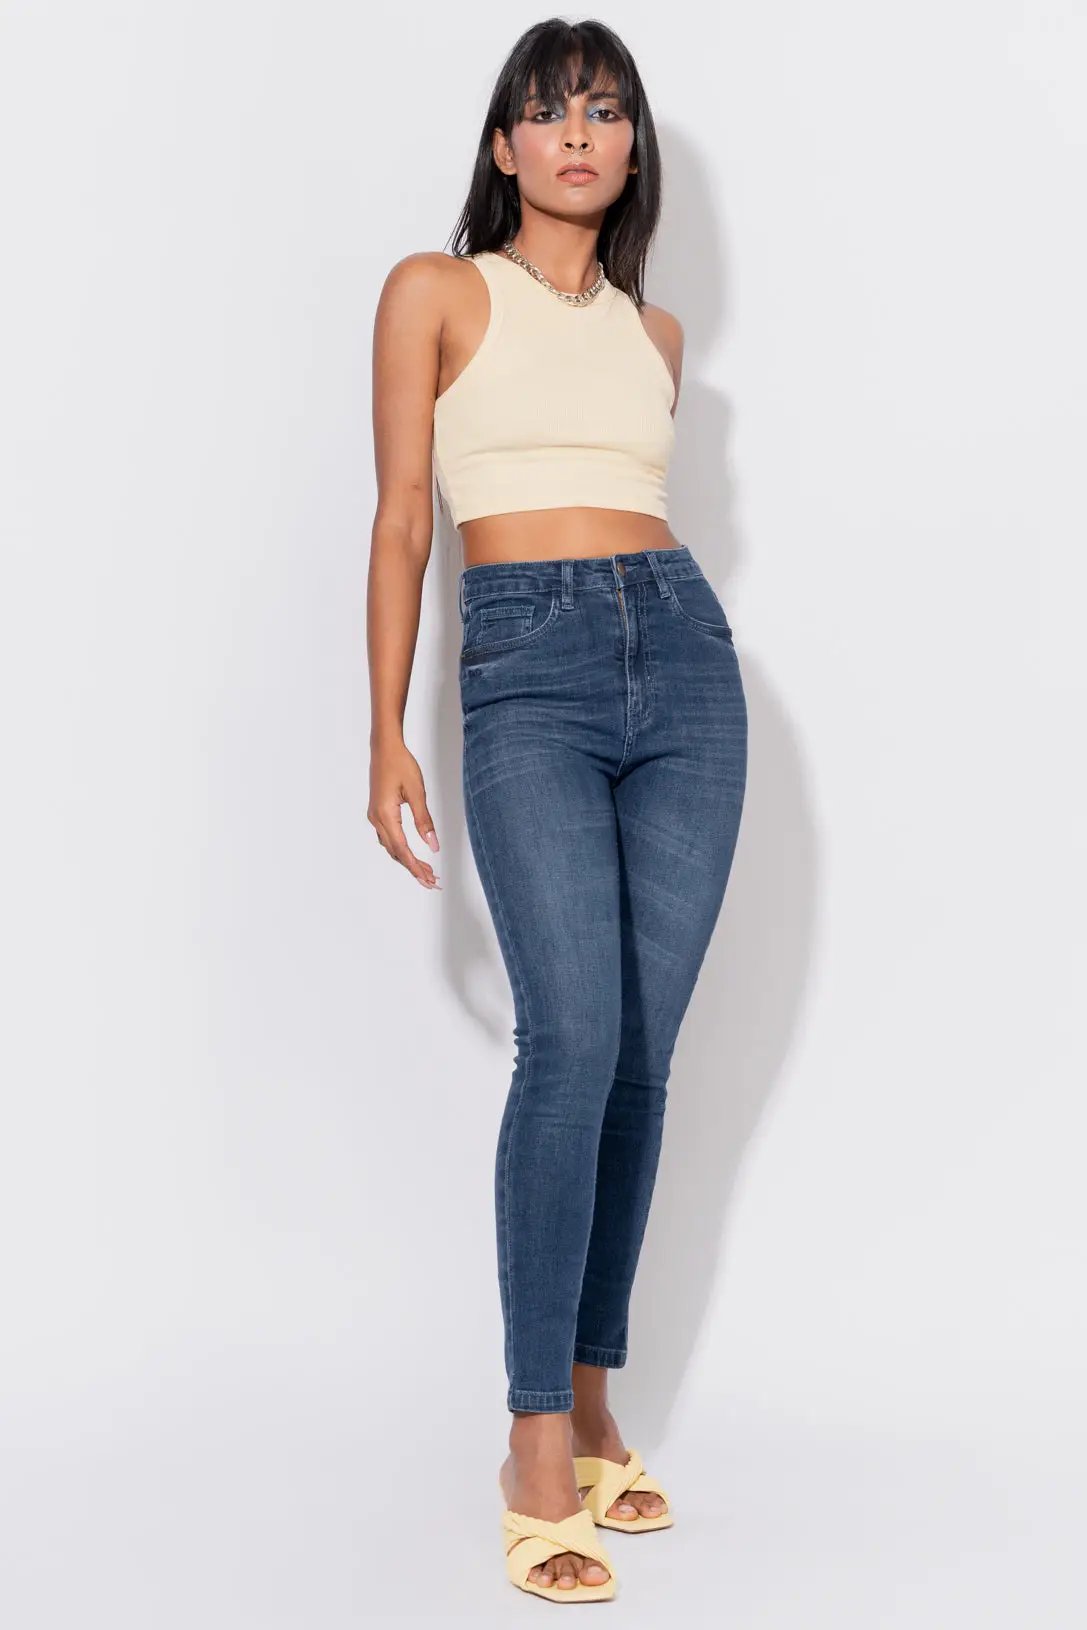 XO LOVE Skinny Women Black Jeans - Buy XO LOVE Skinny Women Black Jeans  Online at Best Prices in India | Flipkart.com